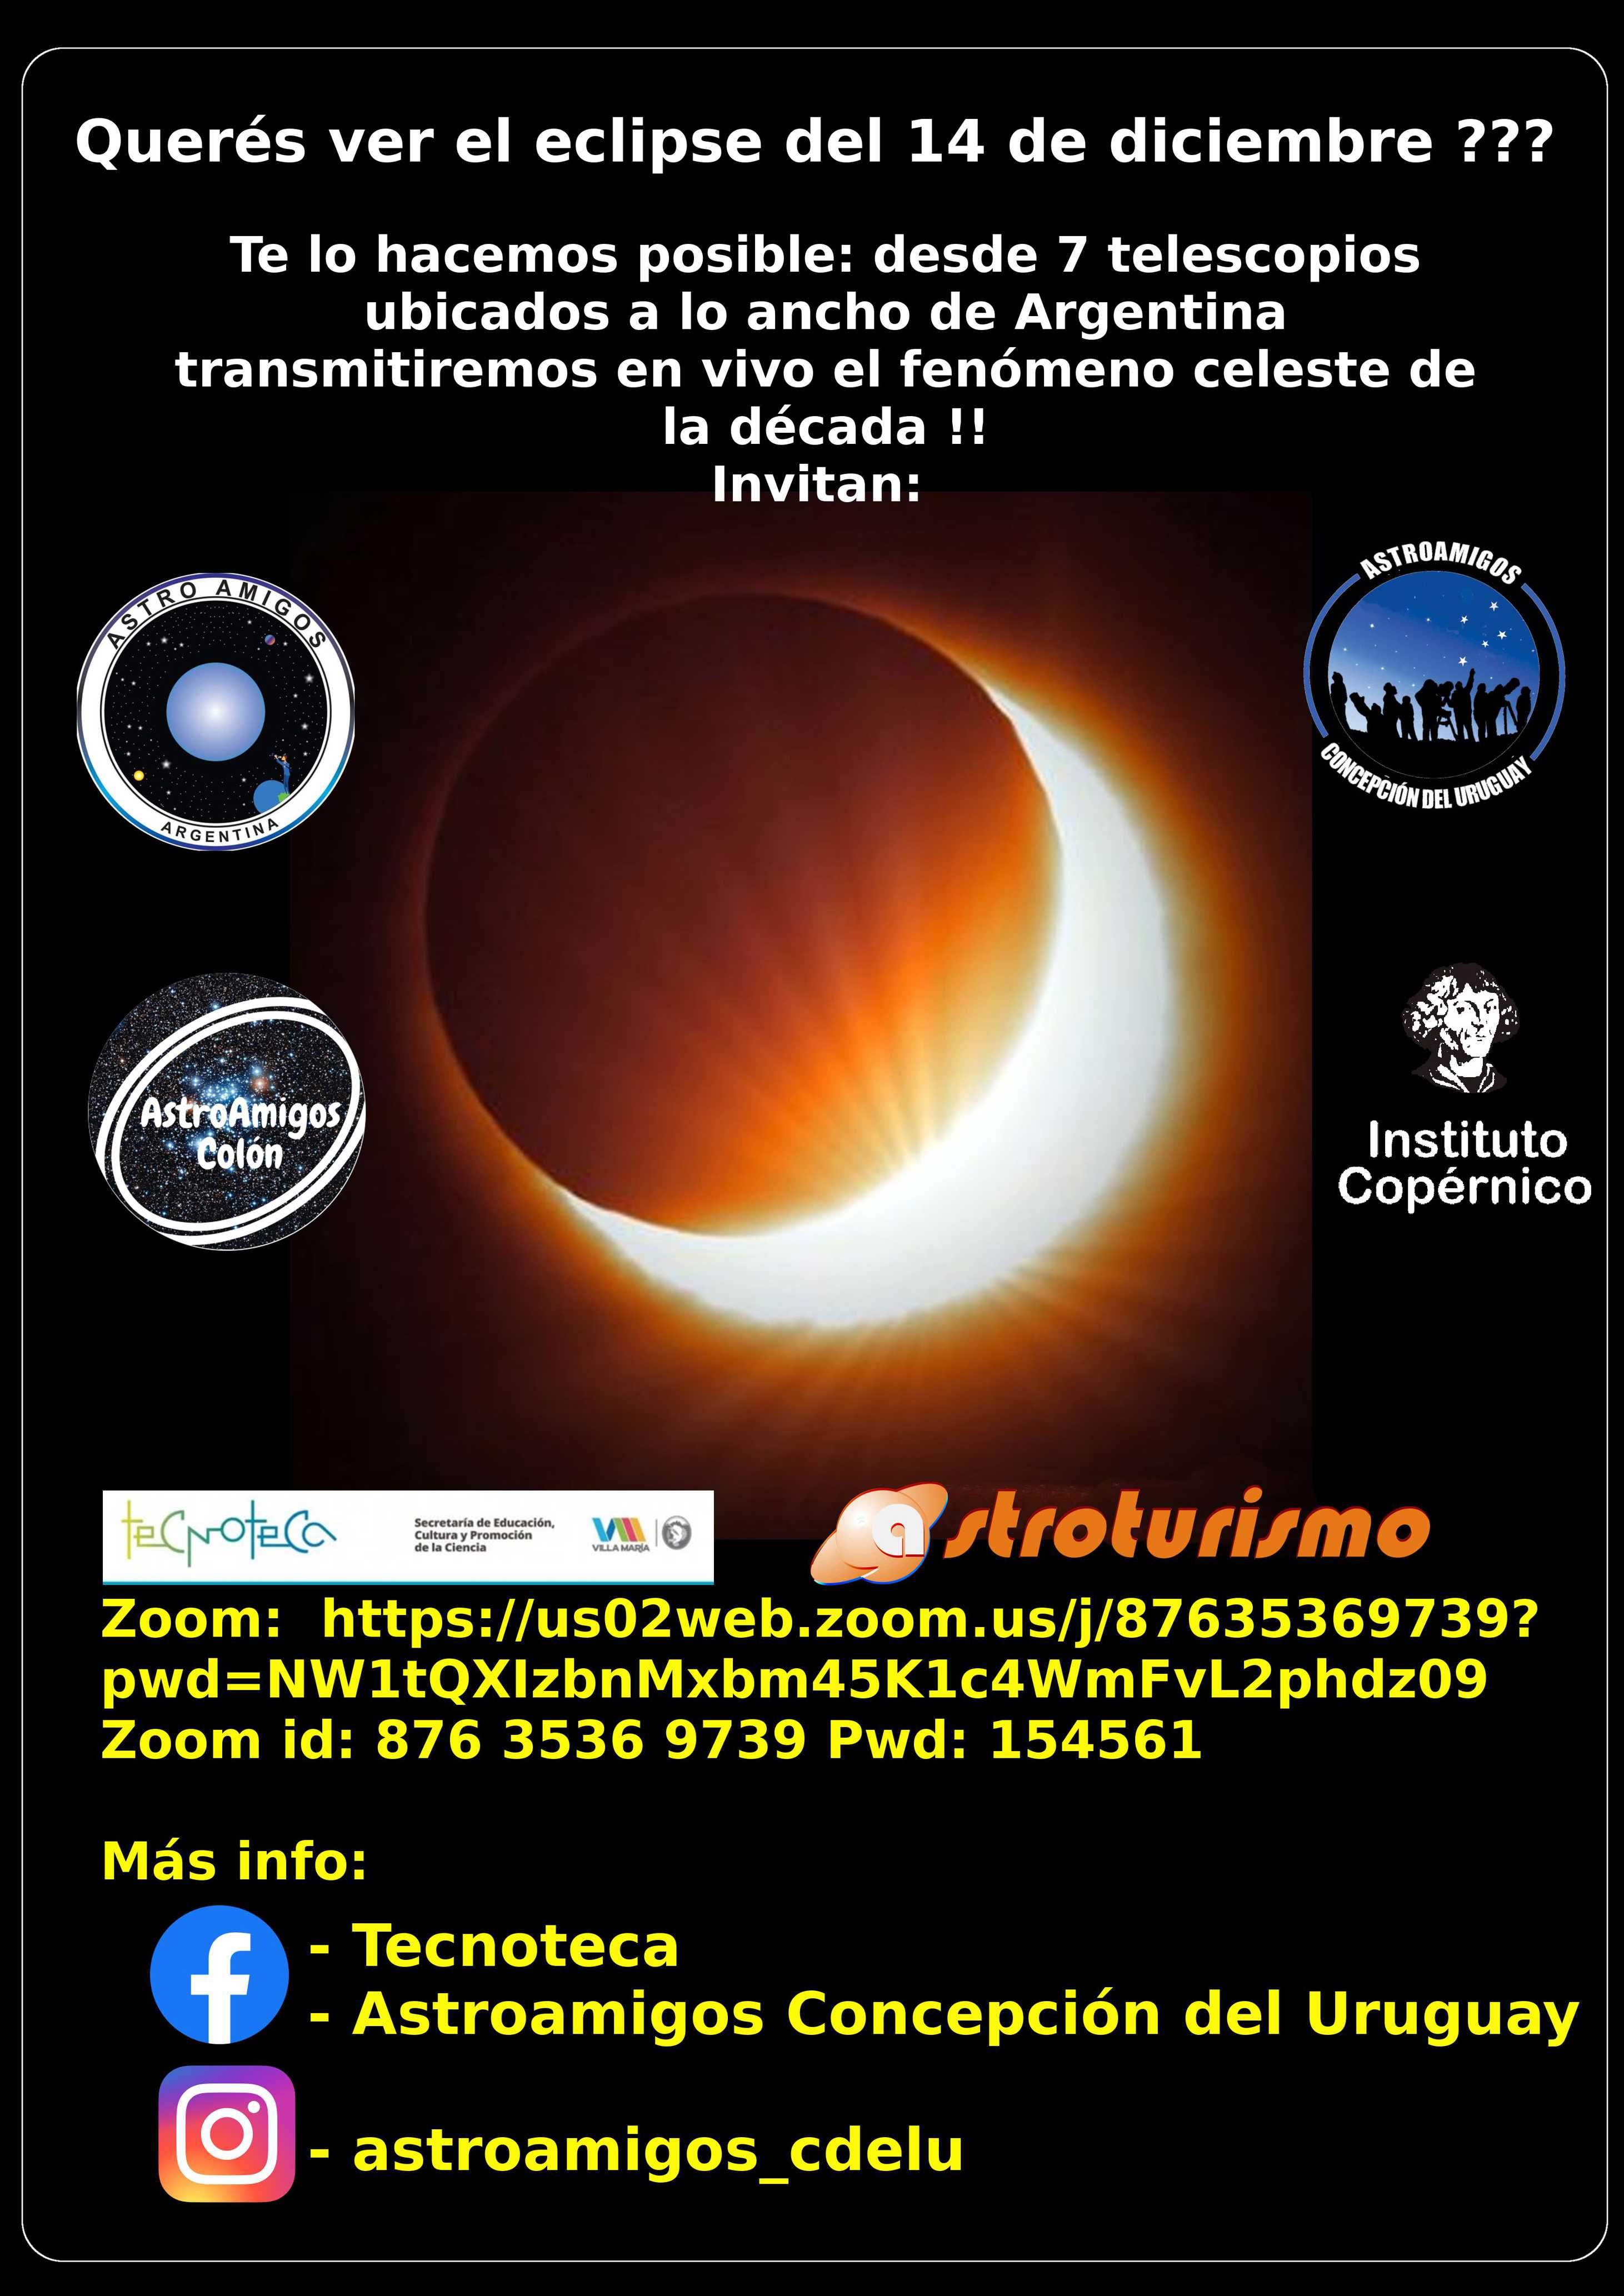 Flyer de la transmisión del eclipse en vivo